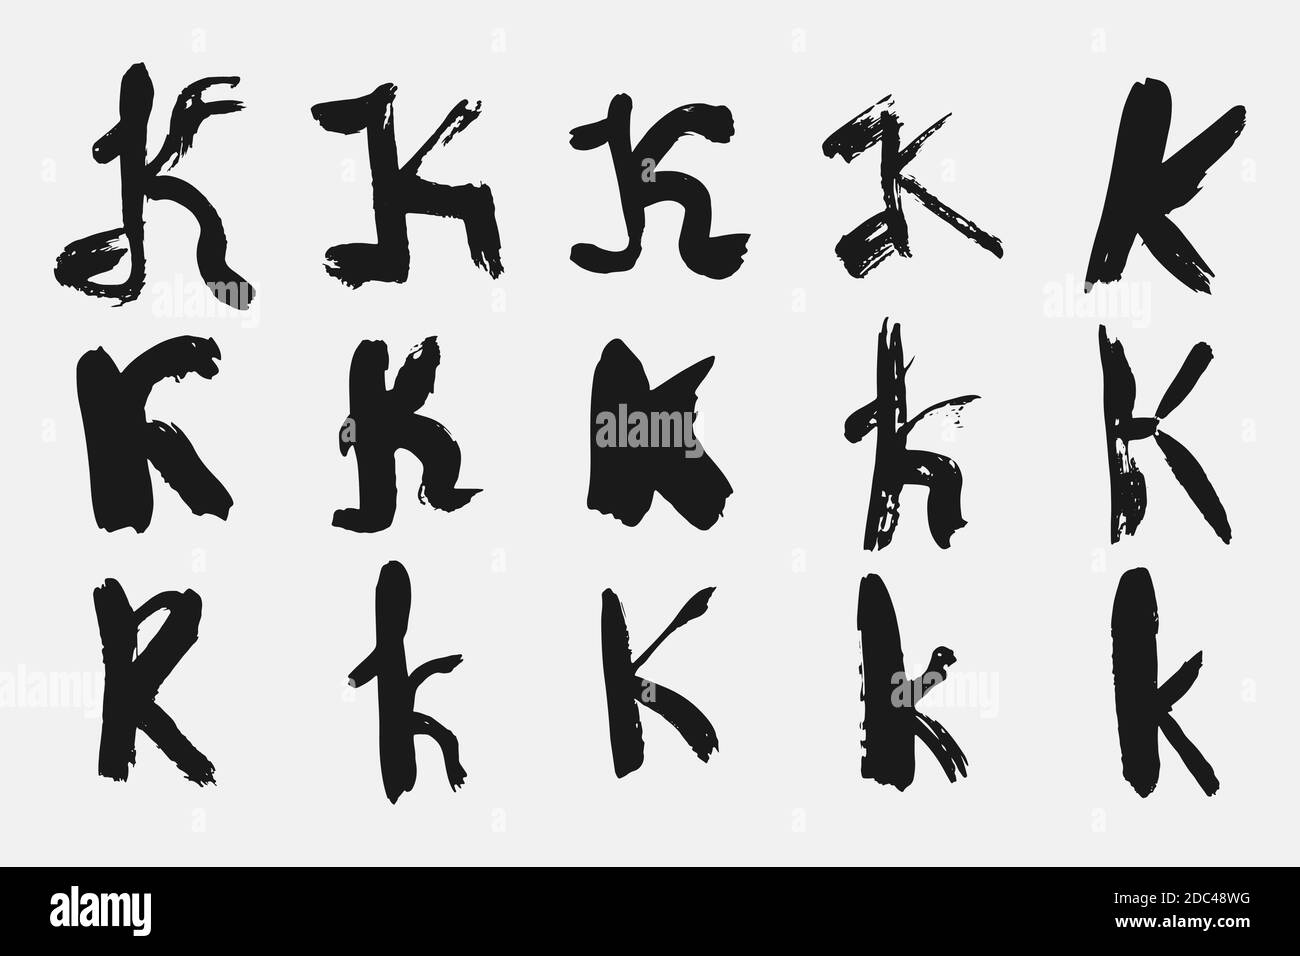 Black letter K written in grunge calligraphy. Stock Vector